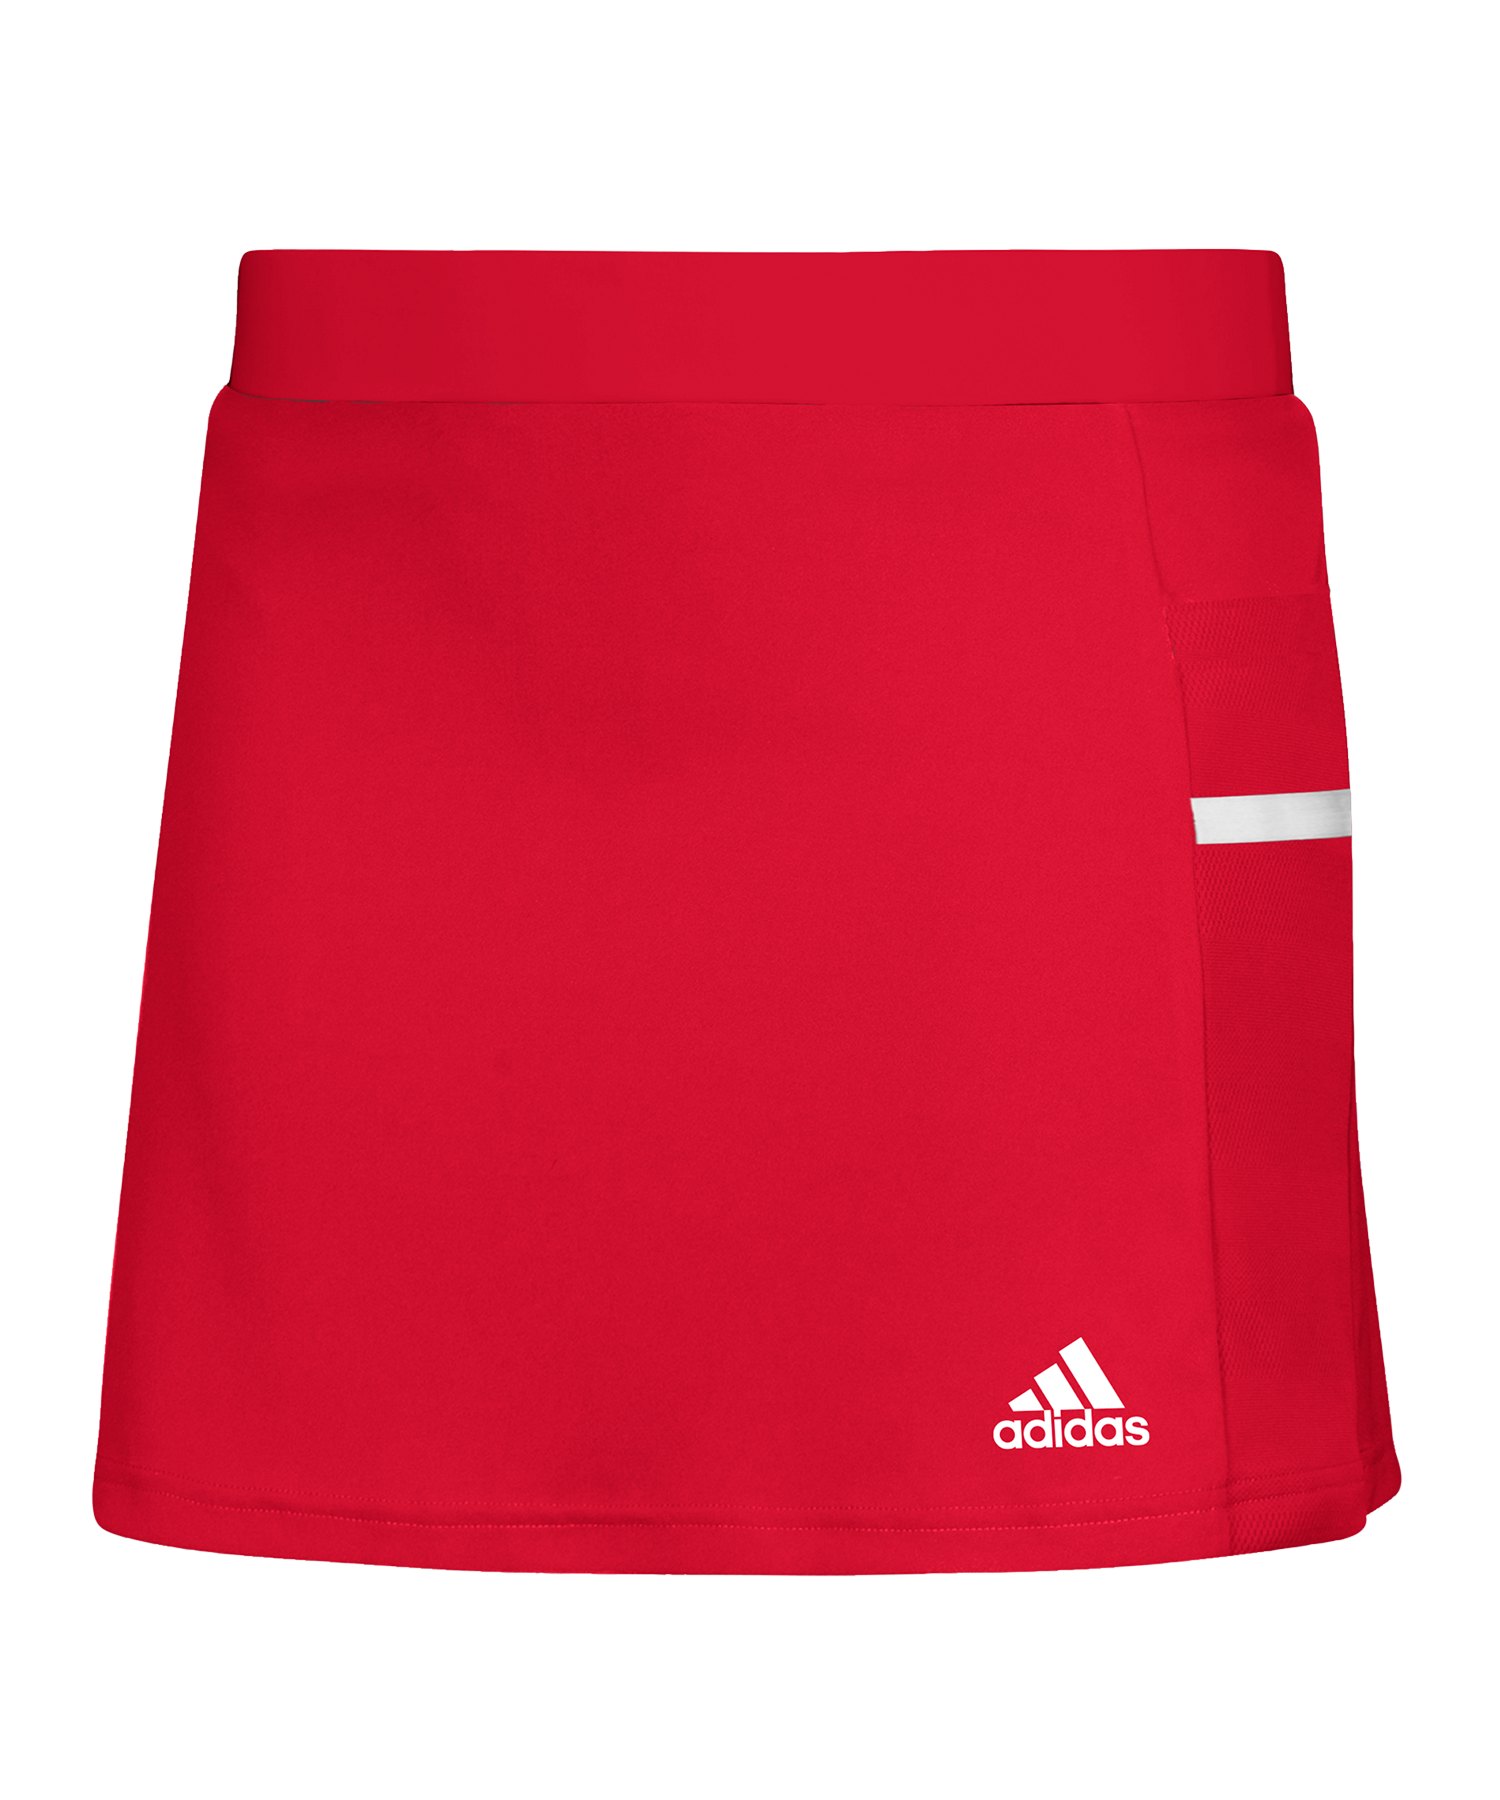 adidas Team 19 Skirt Rock Damen Rot Weiss - rot